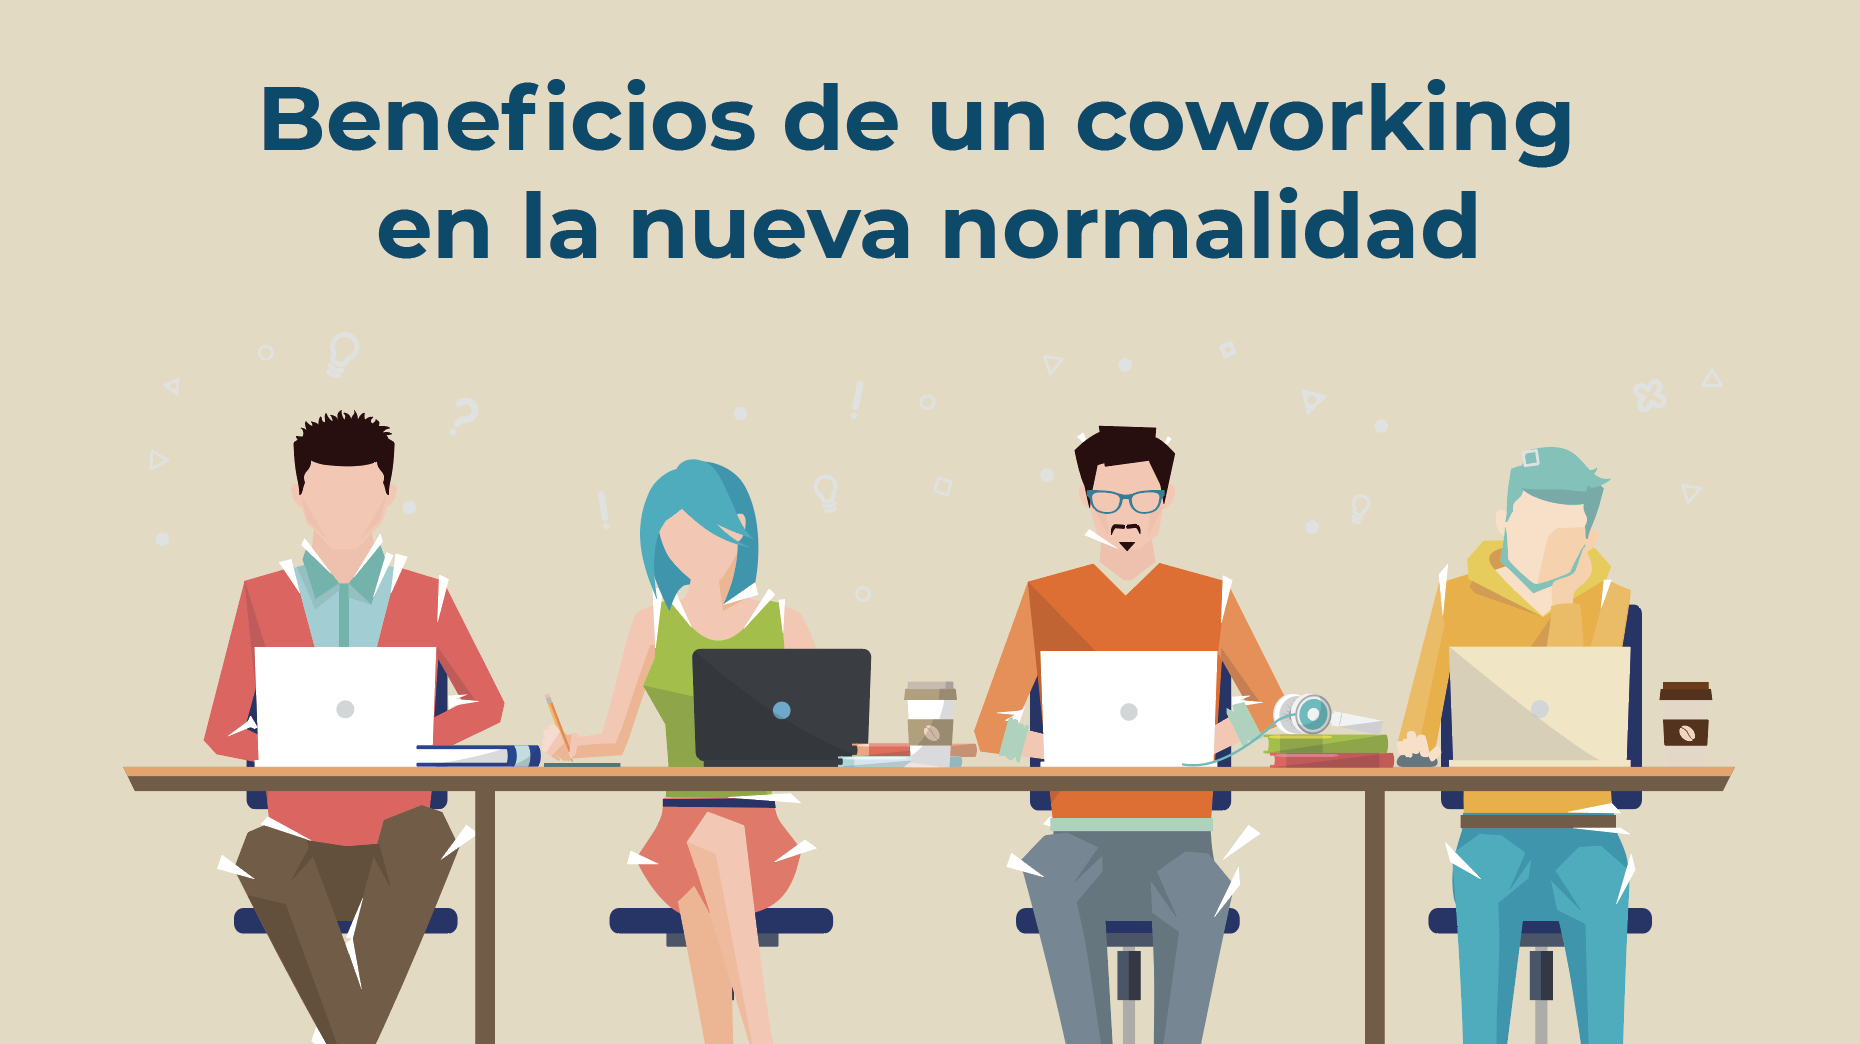 Beneficios de un coworking en la nueva normalidad